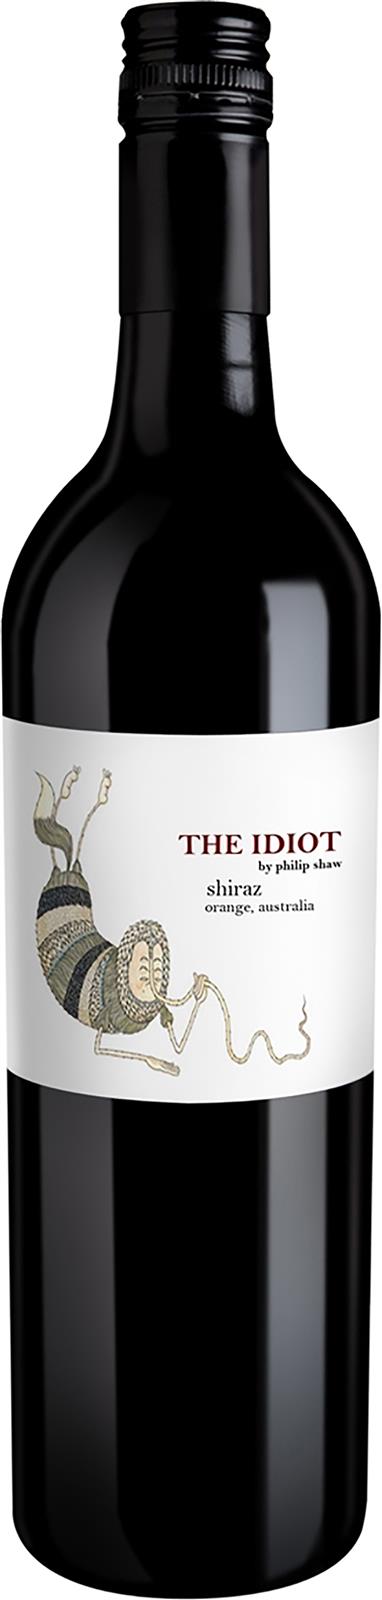 Philip Shaw 'The Idiot' Shiraz 2017 (Australia)